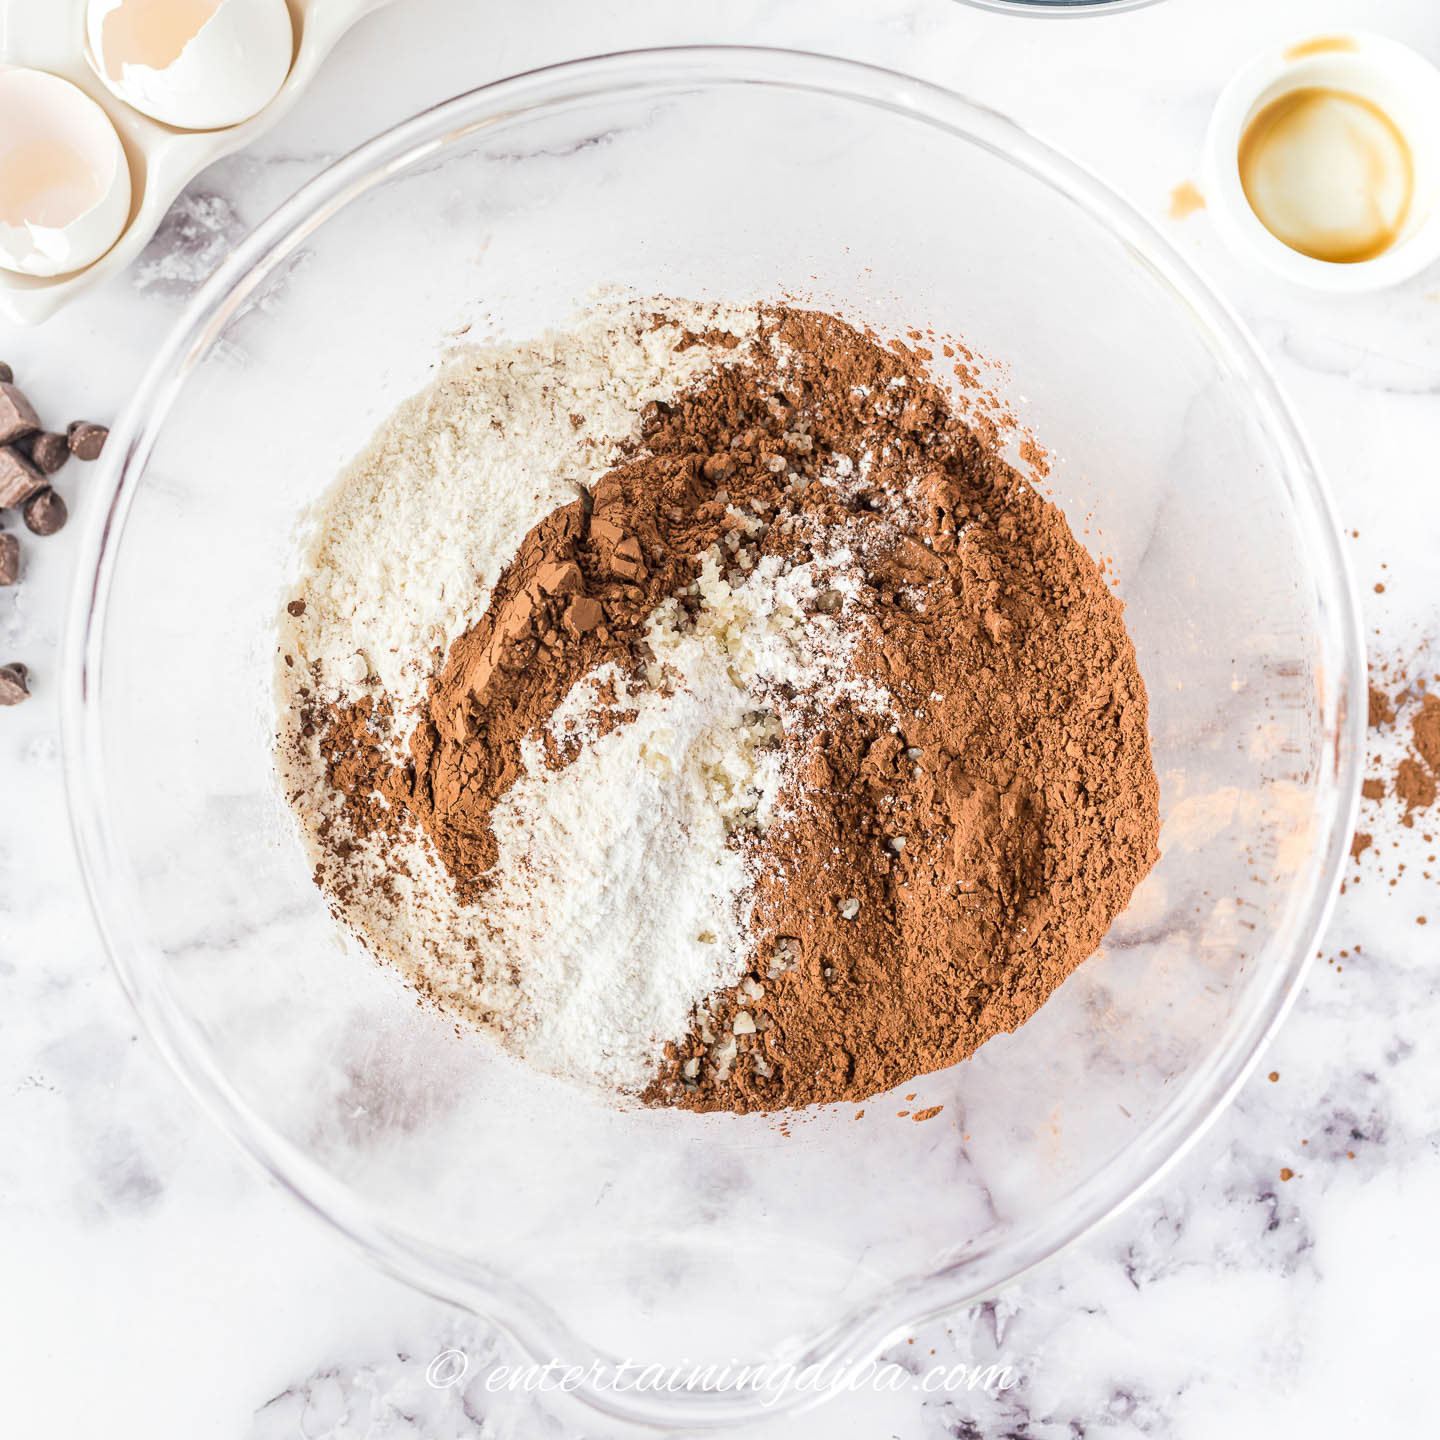 flour, cocoa powder, baking powder, and sea salt in a bowl